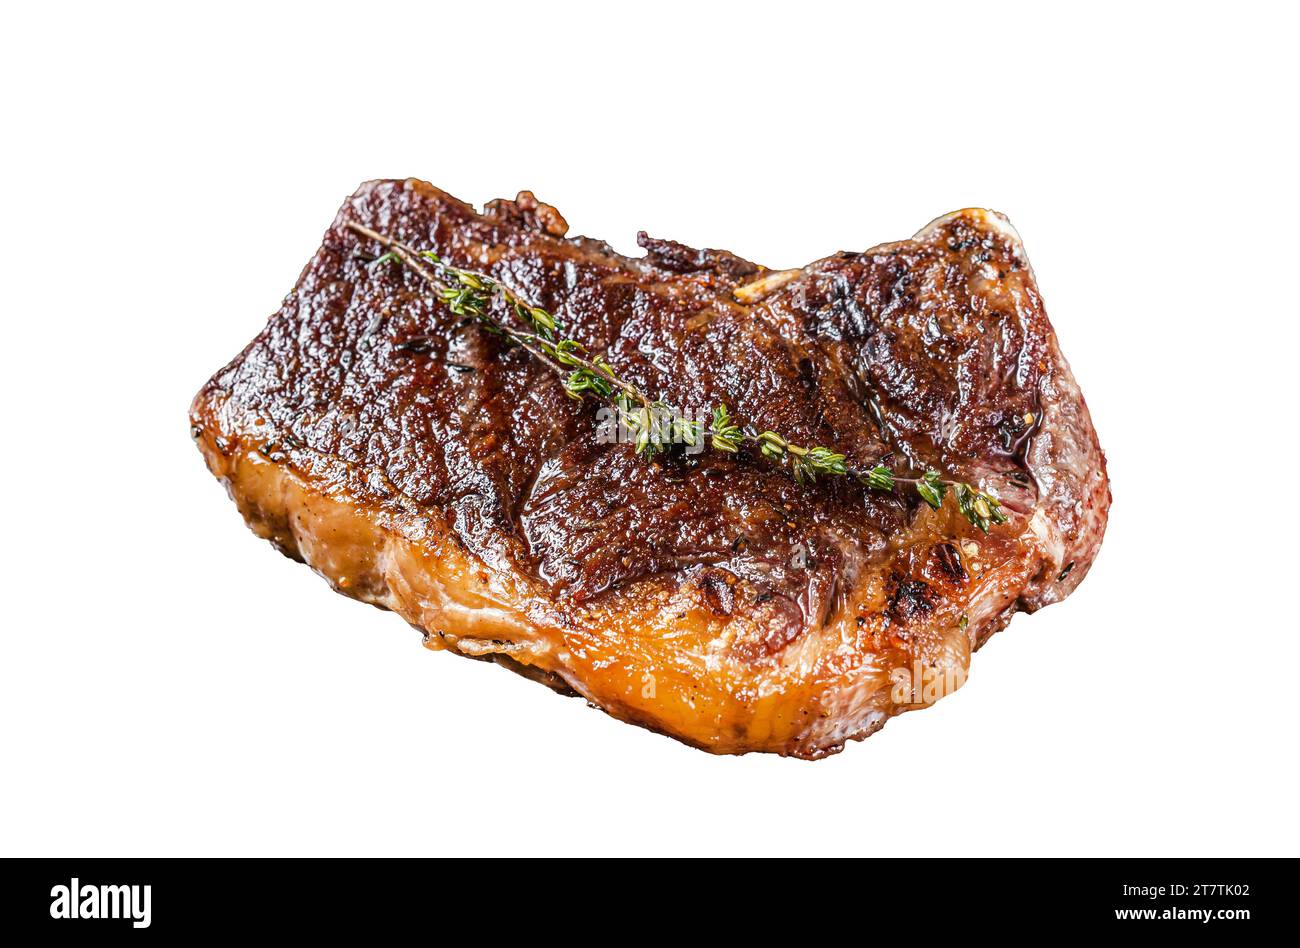 Steak de viande de bœuf striploin grillé ou bifteck New york sur une grille. Isolé, fond blanc Banque D'Images